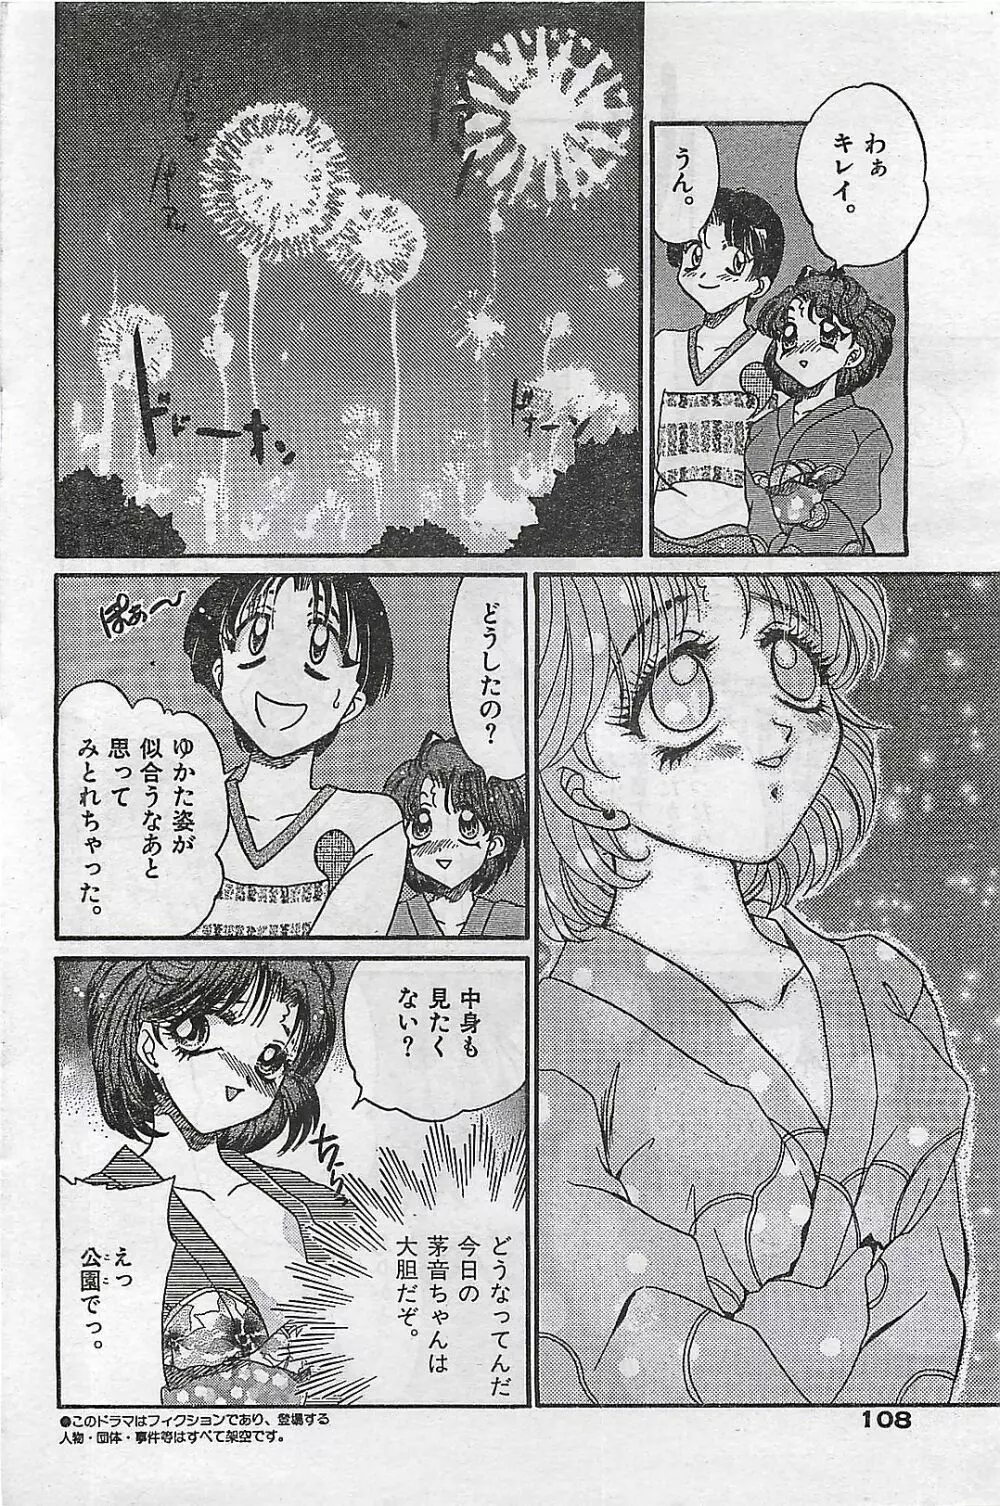 COMIC ゆみちゃん No.2 1995年08月号 108ページ